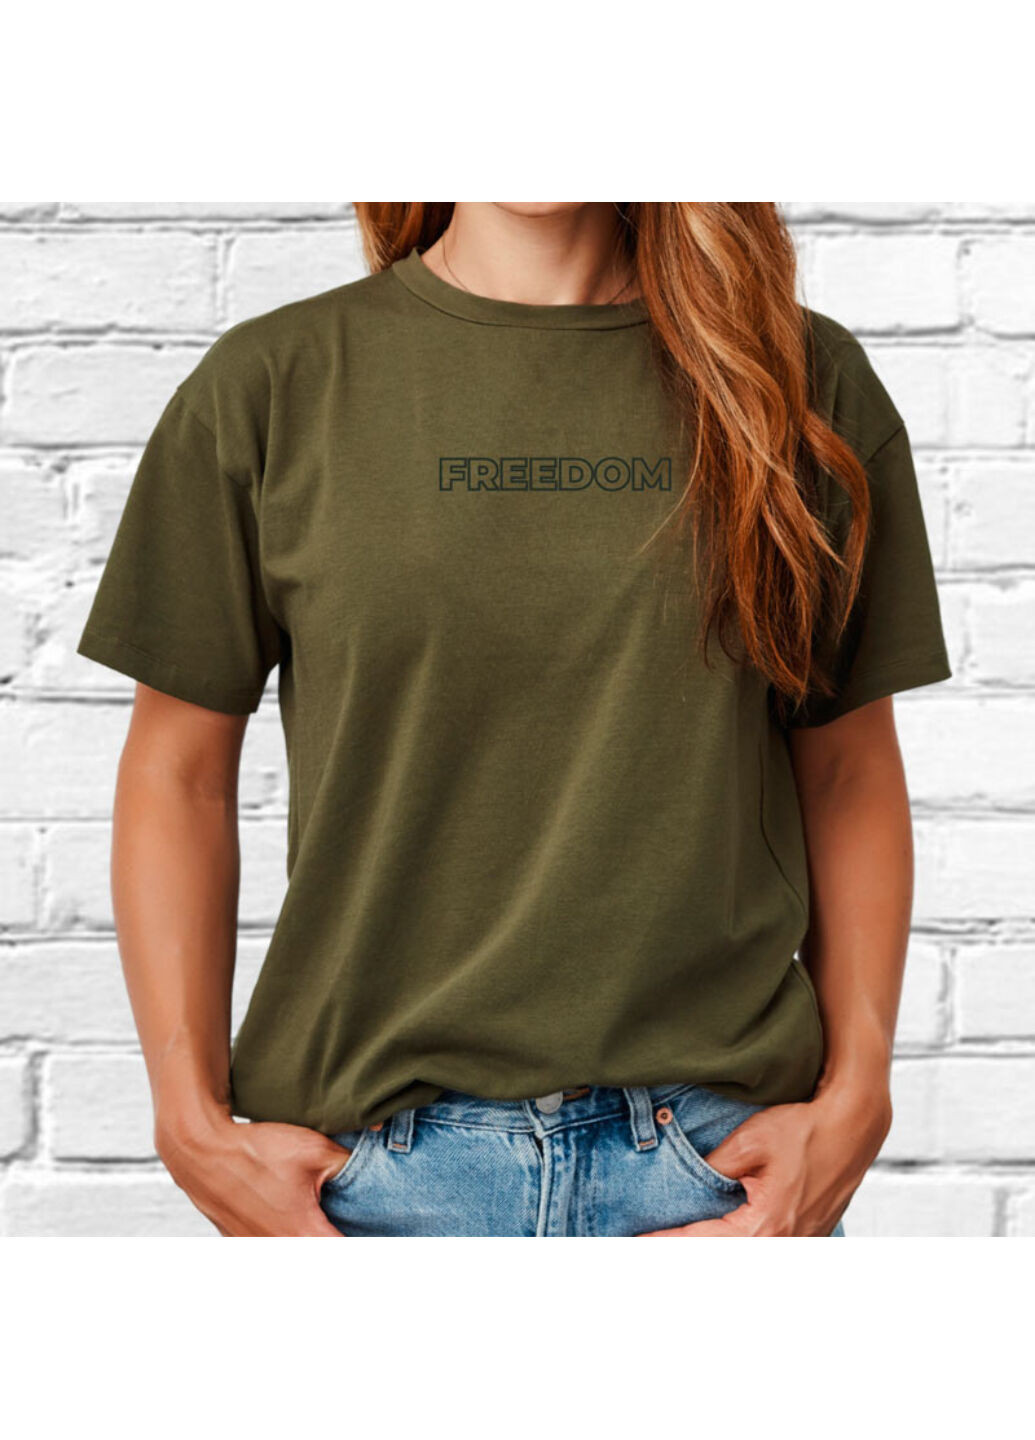 Хакі (оливкова) футболка з вишивкою freedom жіноча millytary green l No Brand